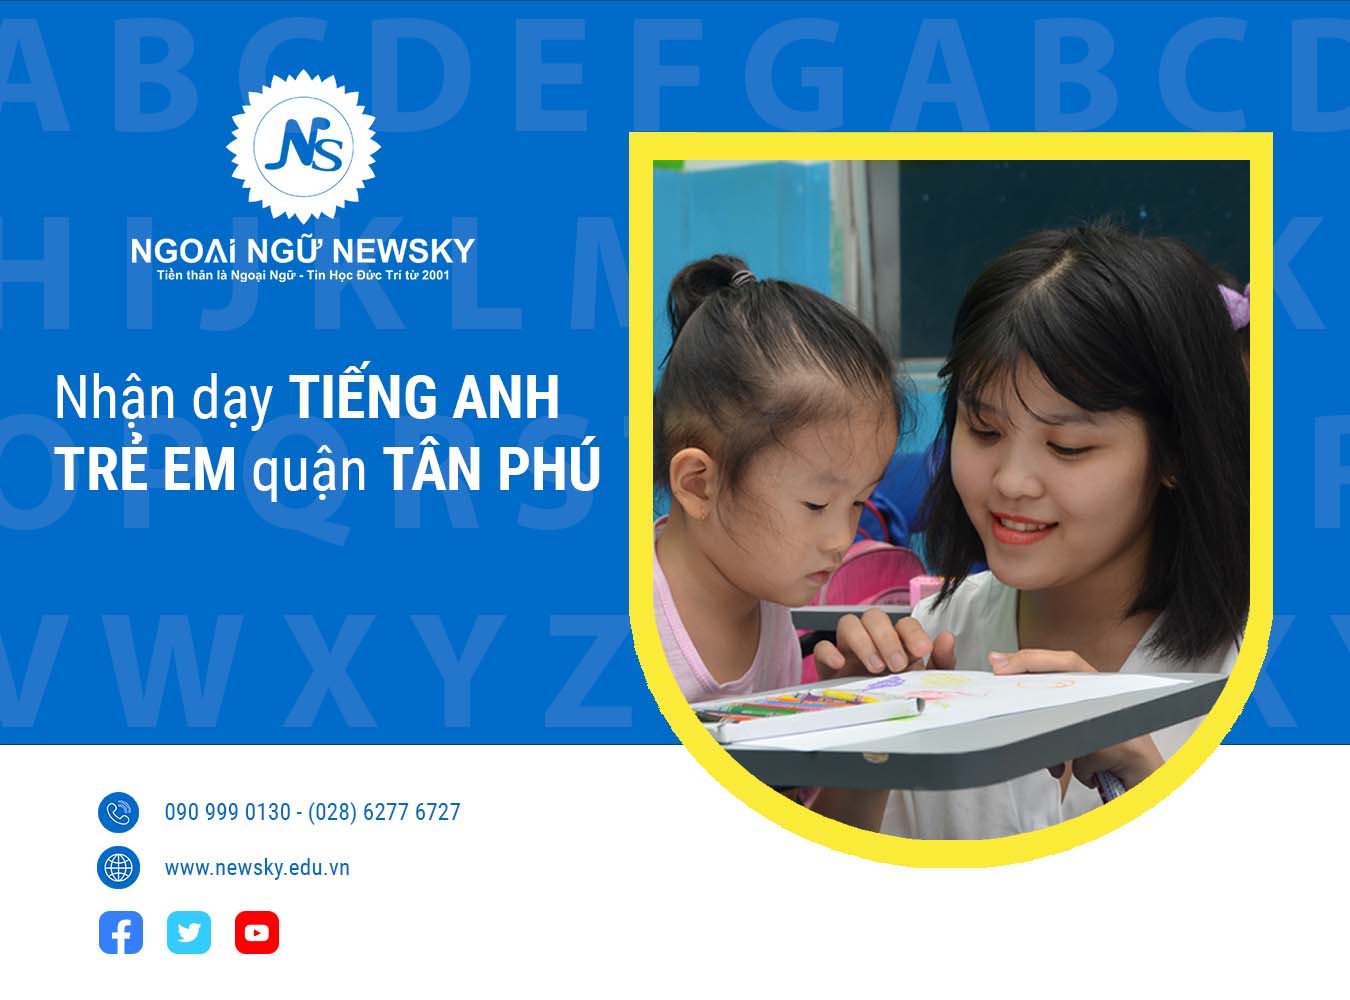 Trung tâm dạy tiếng Anh Trẻ Em quận Tân Phú uy tín